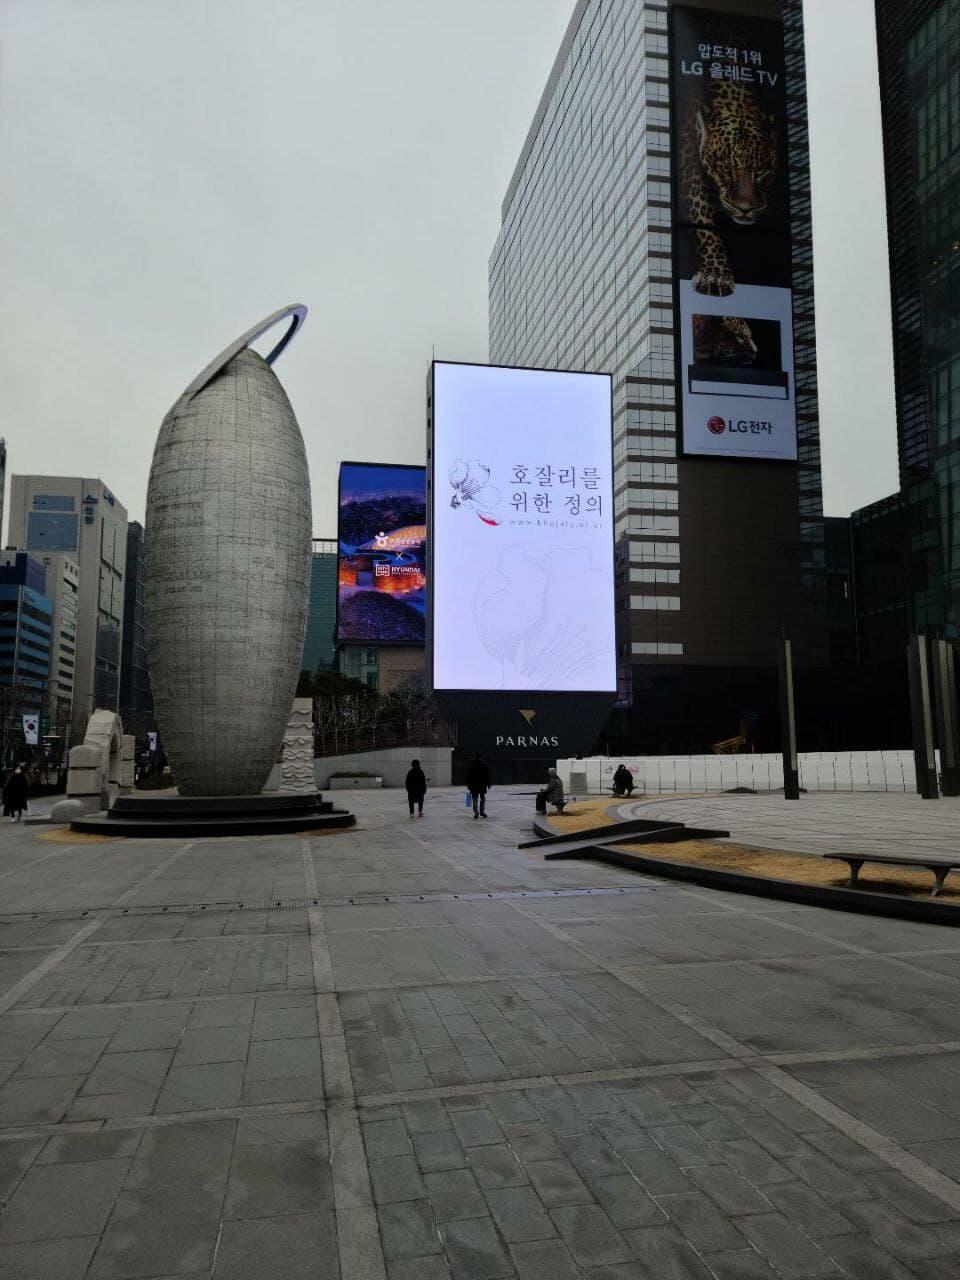 В Сеуле проводятся акции в рамках кампании "Справедливость для Ходжалы"